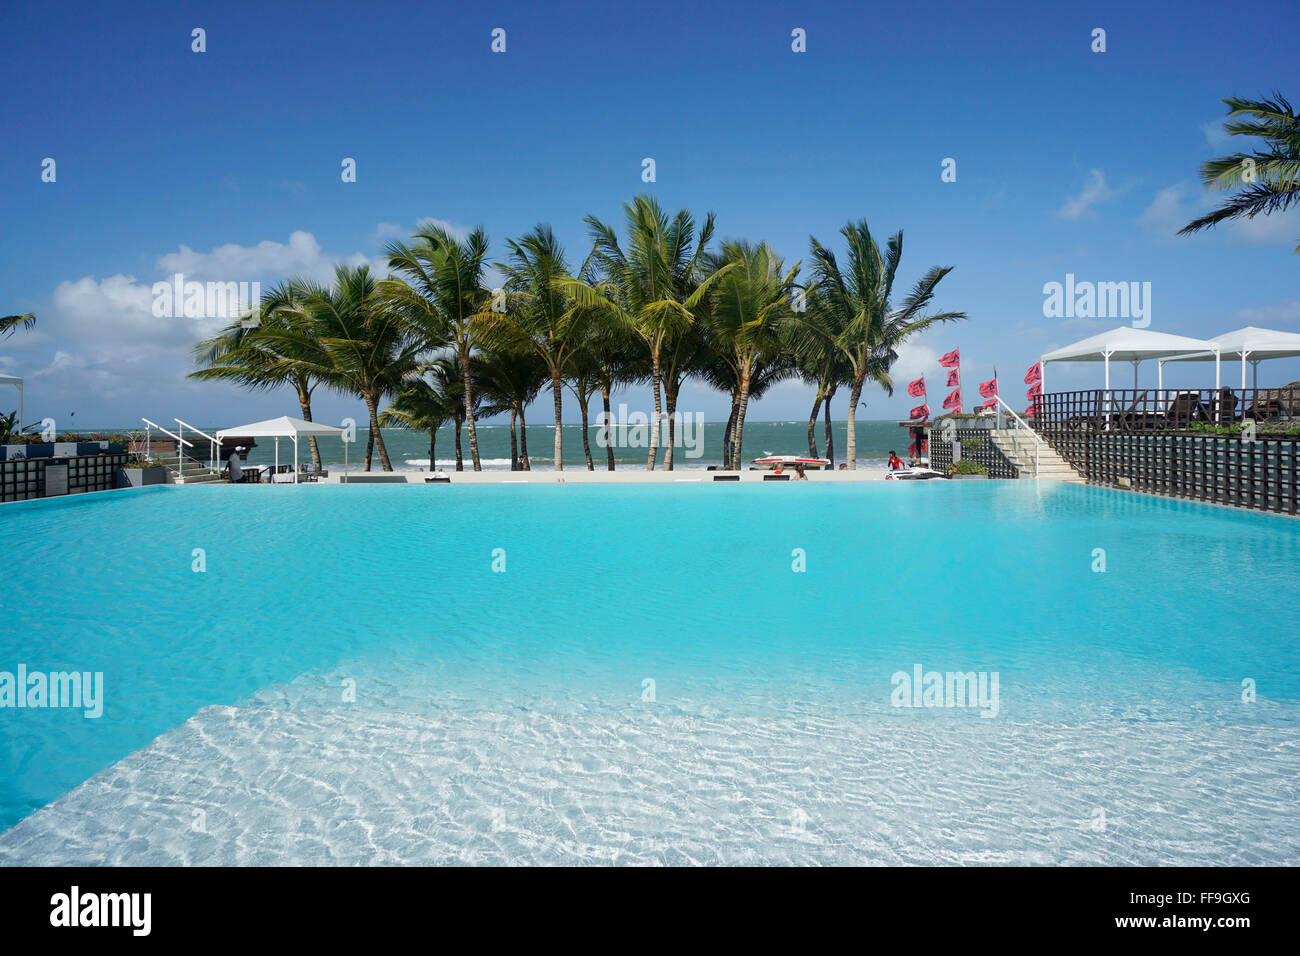 Pool, palm trees, Millenium Resort, Cabarete,  Dominican Republic Stock Photo